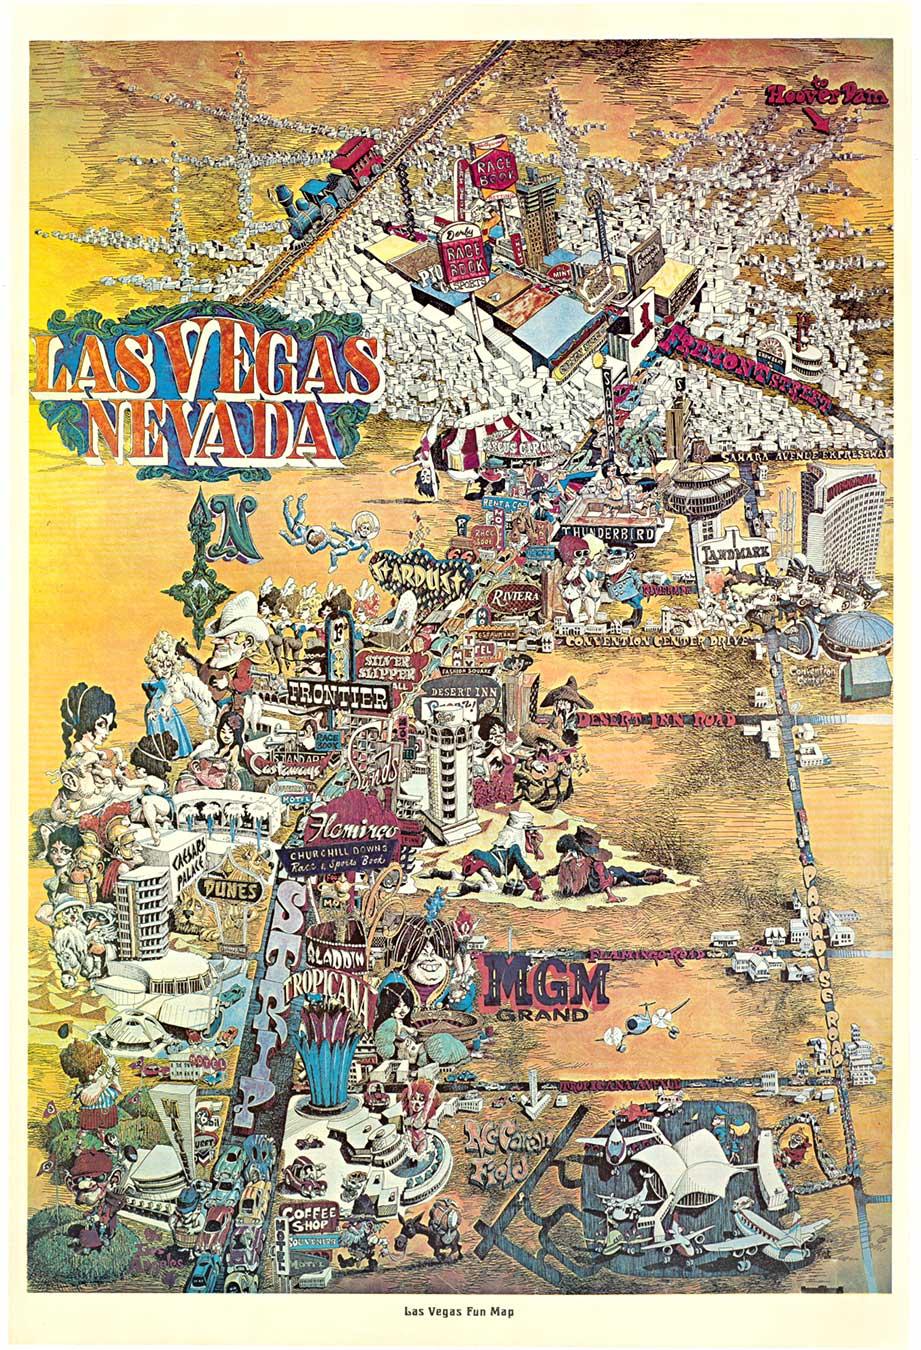 Original Las Vegas Fun Map vintage 1960s travel poster